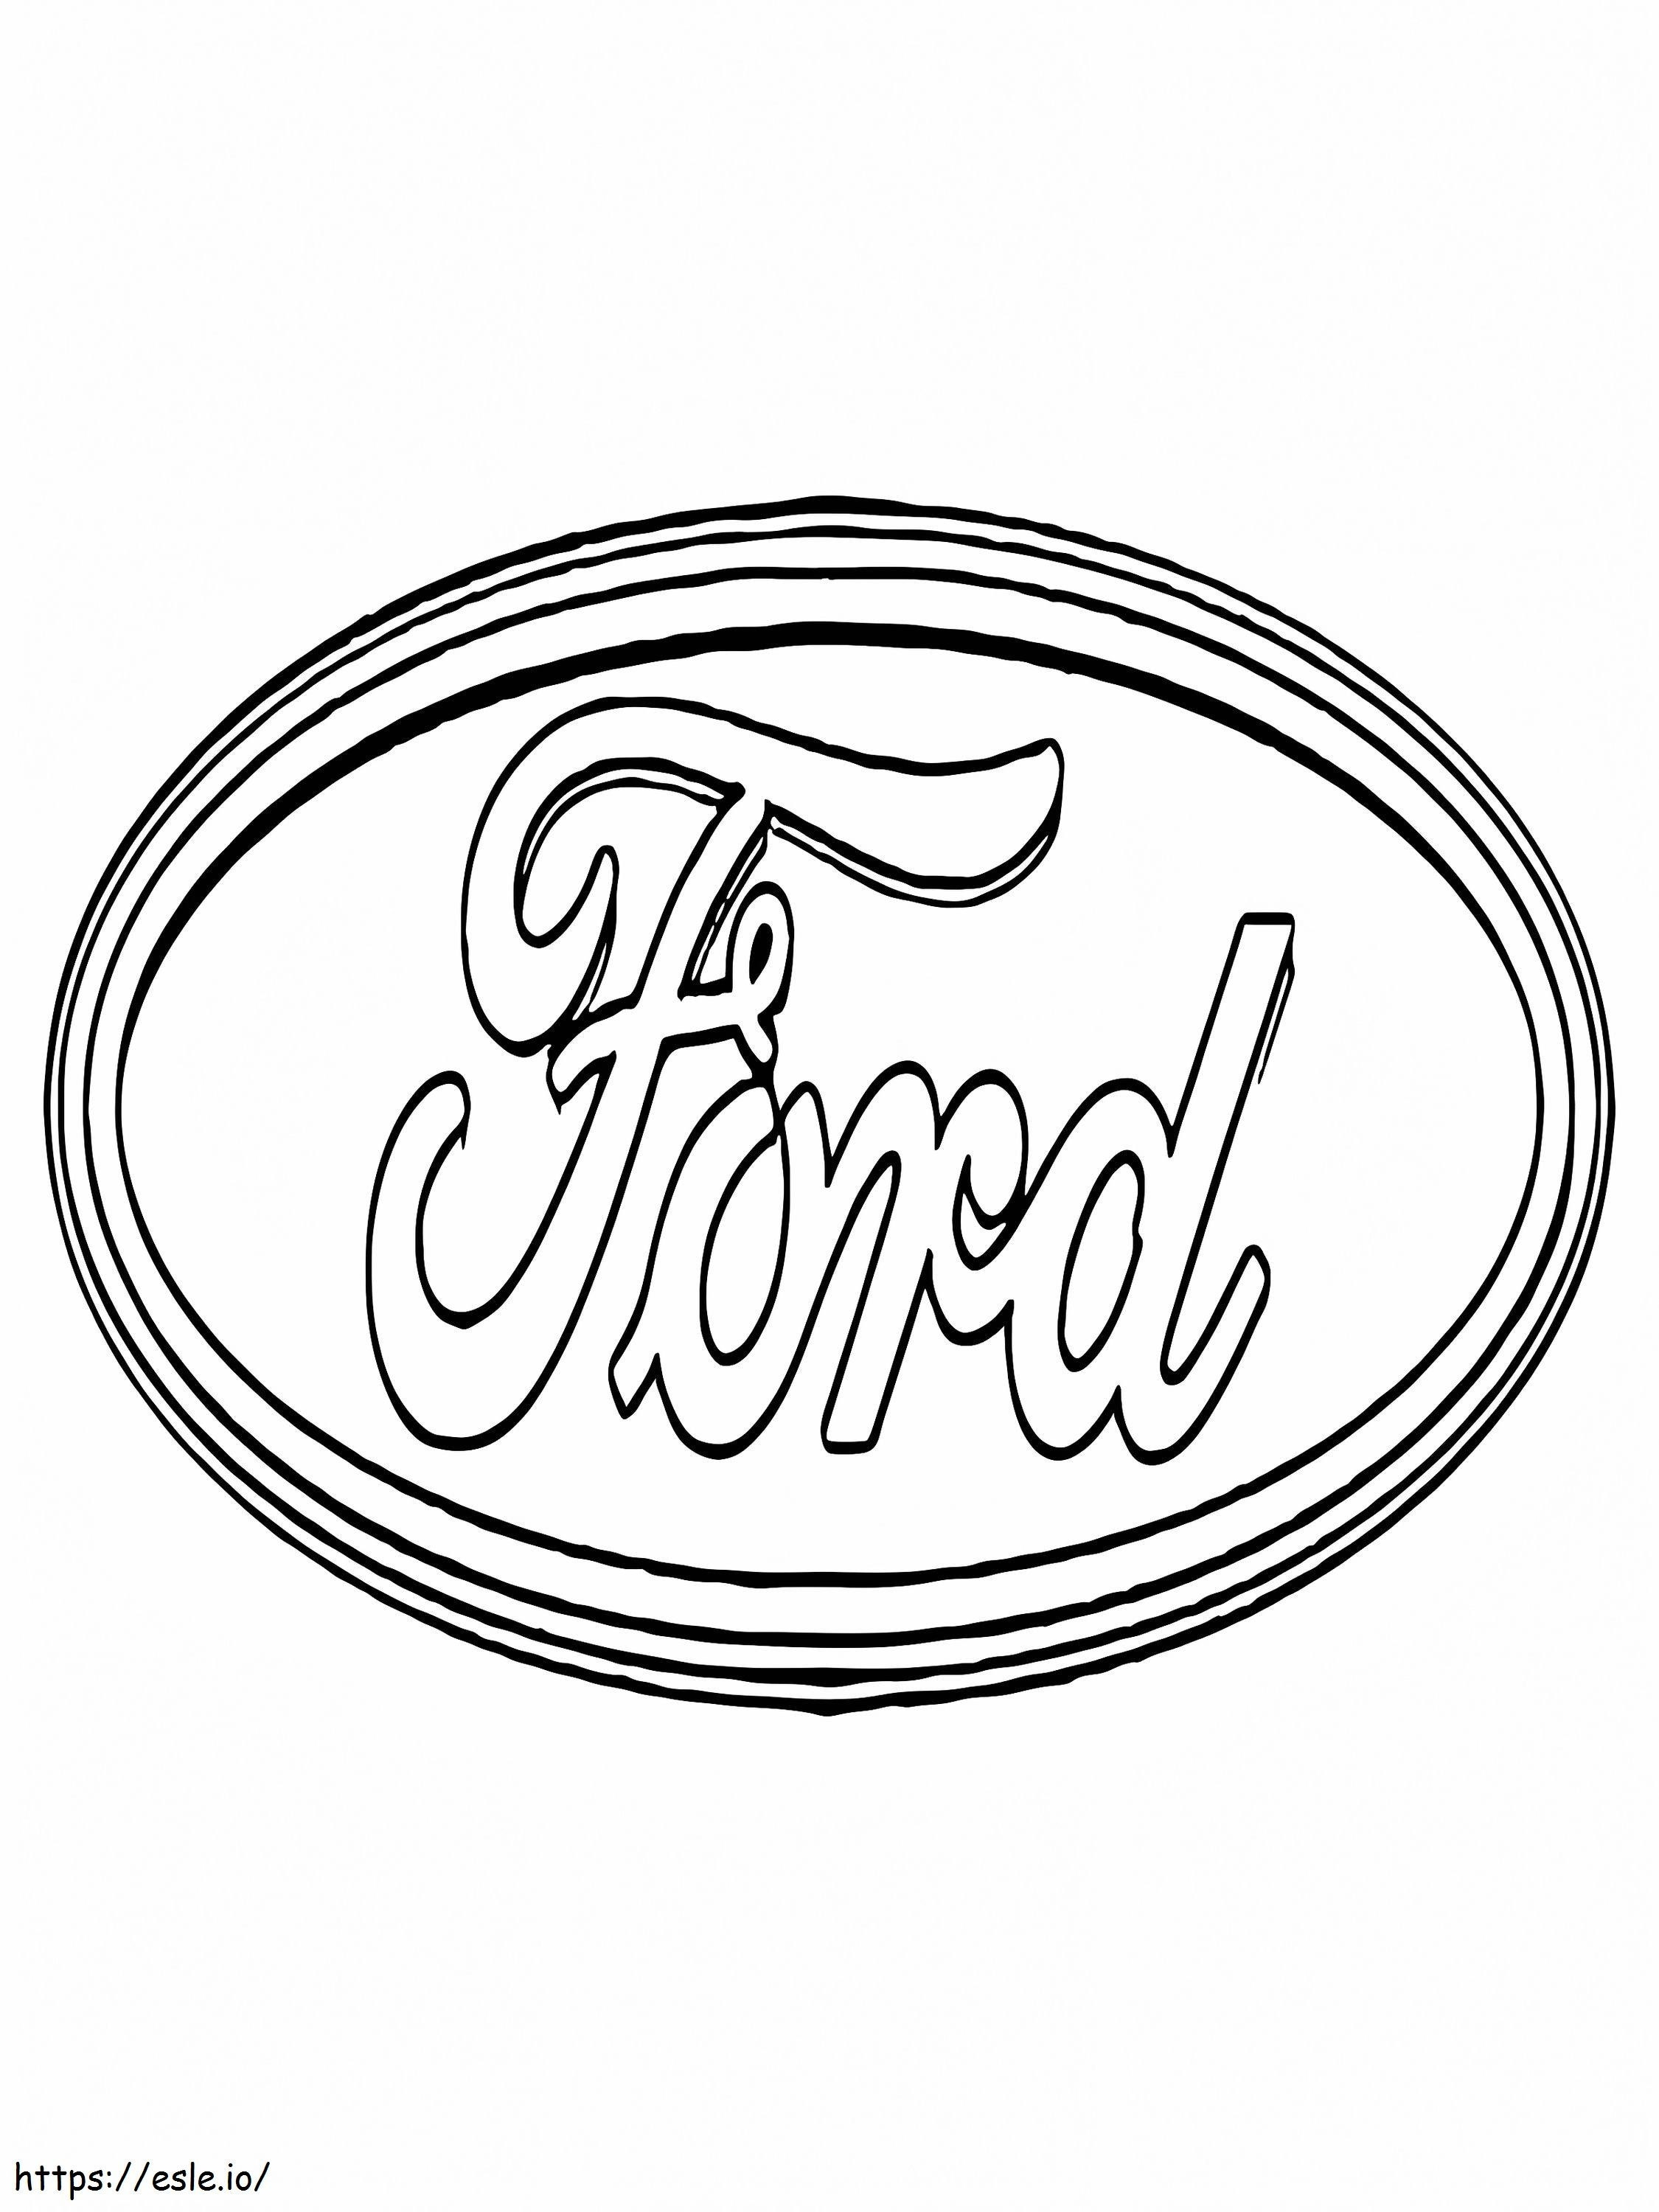 Logo dell'auto Ford da colorare